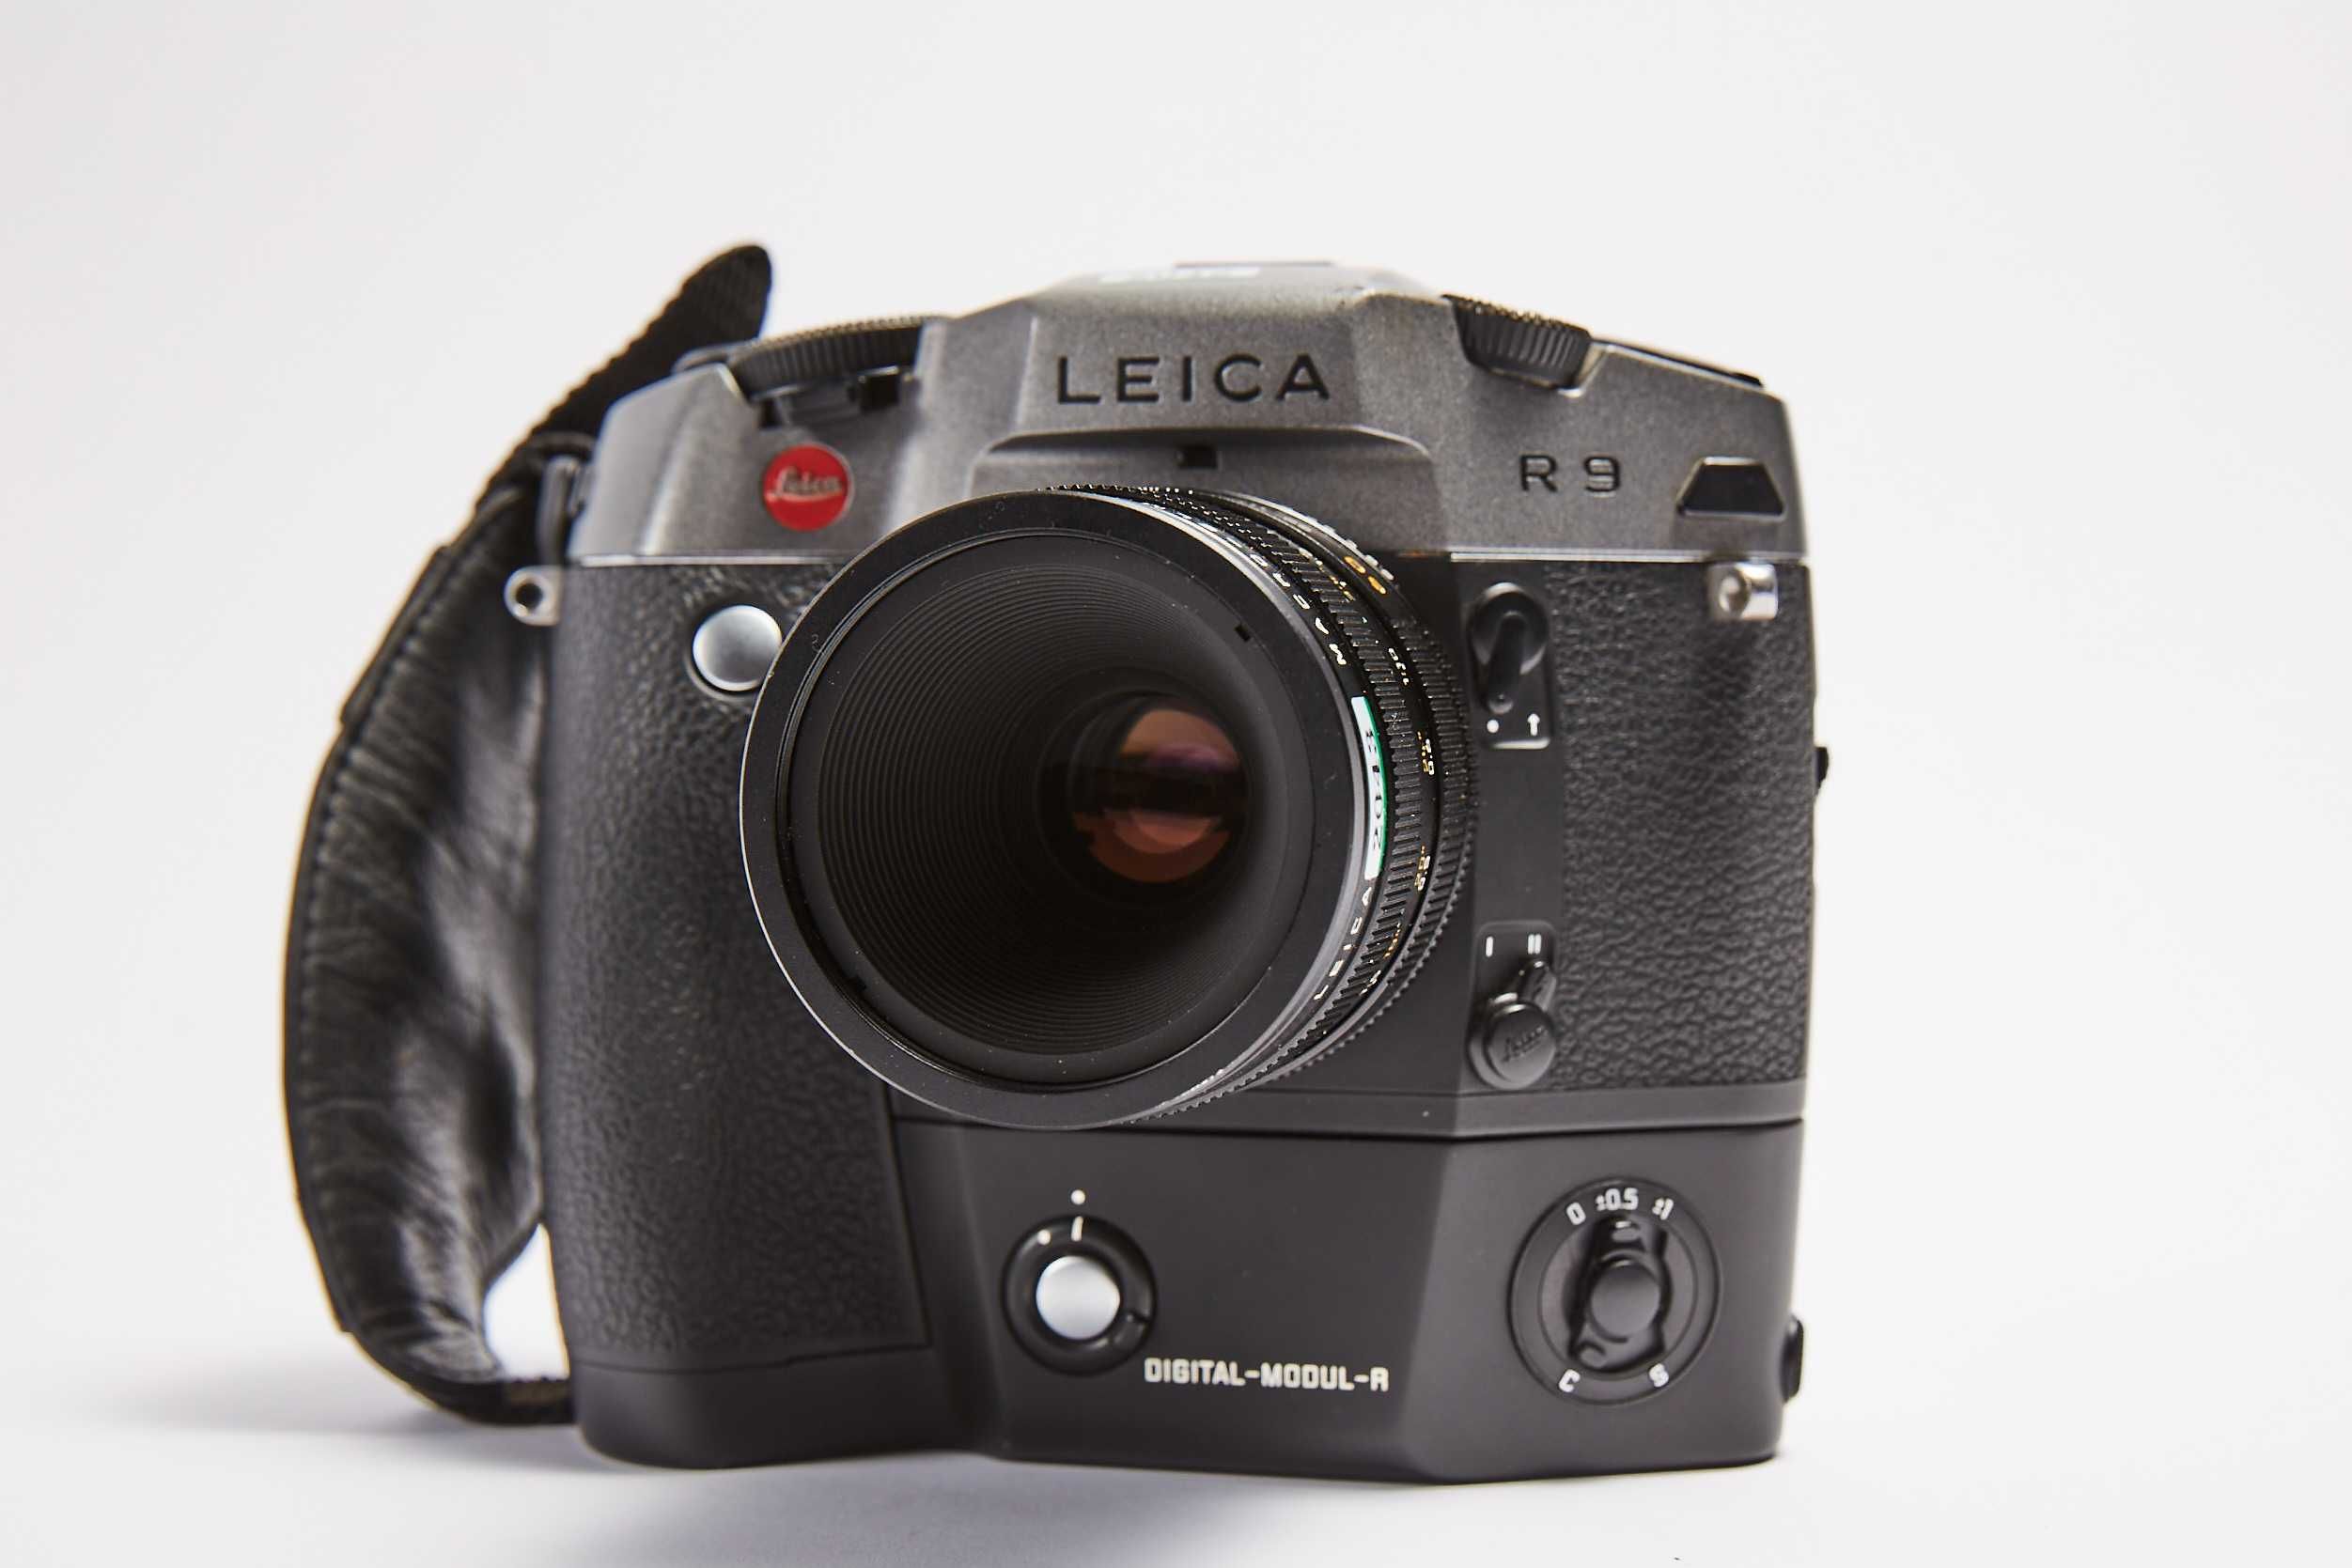 Obiektyw Leica 60mm macro Elmarit-R 1:2.8